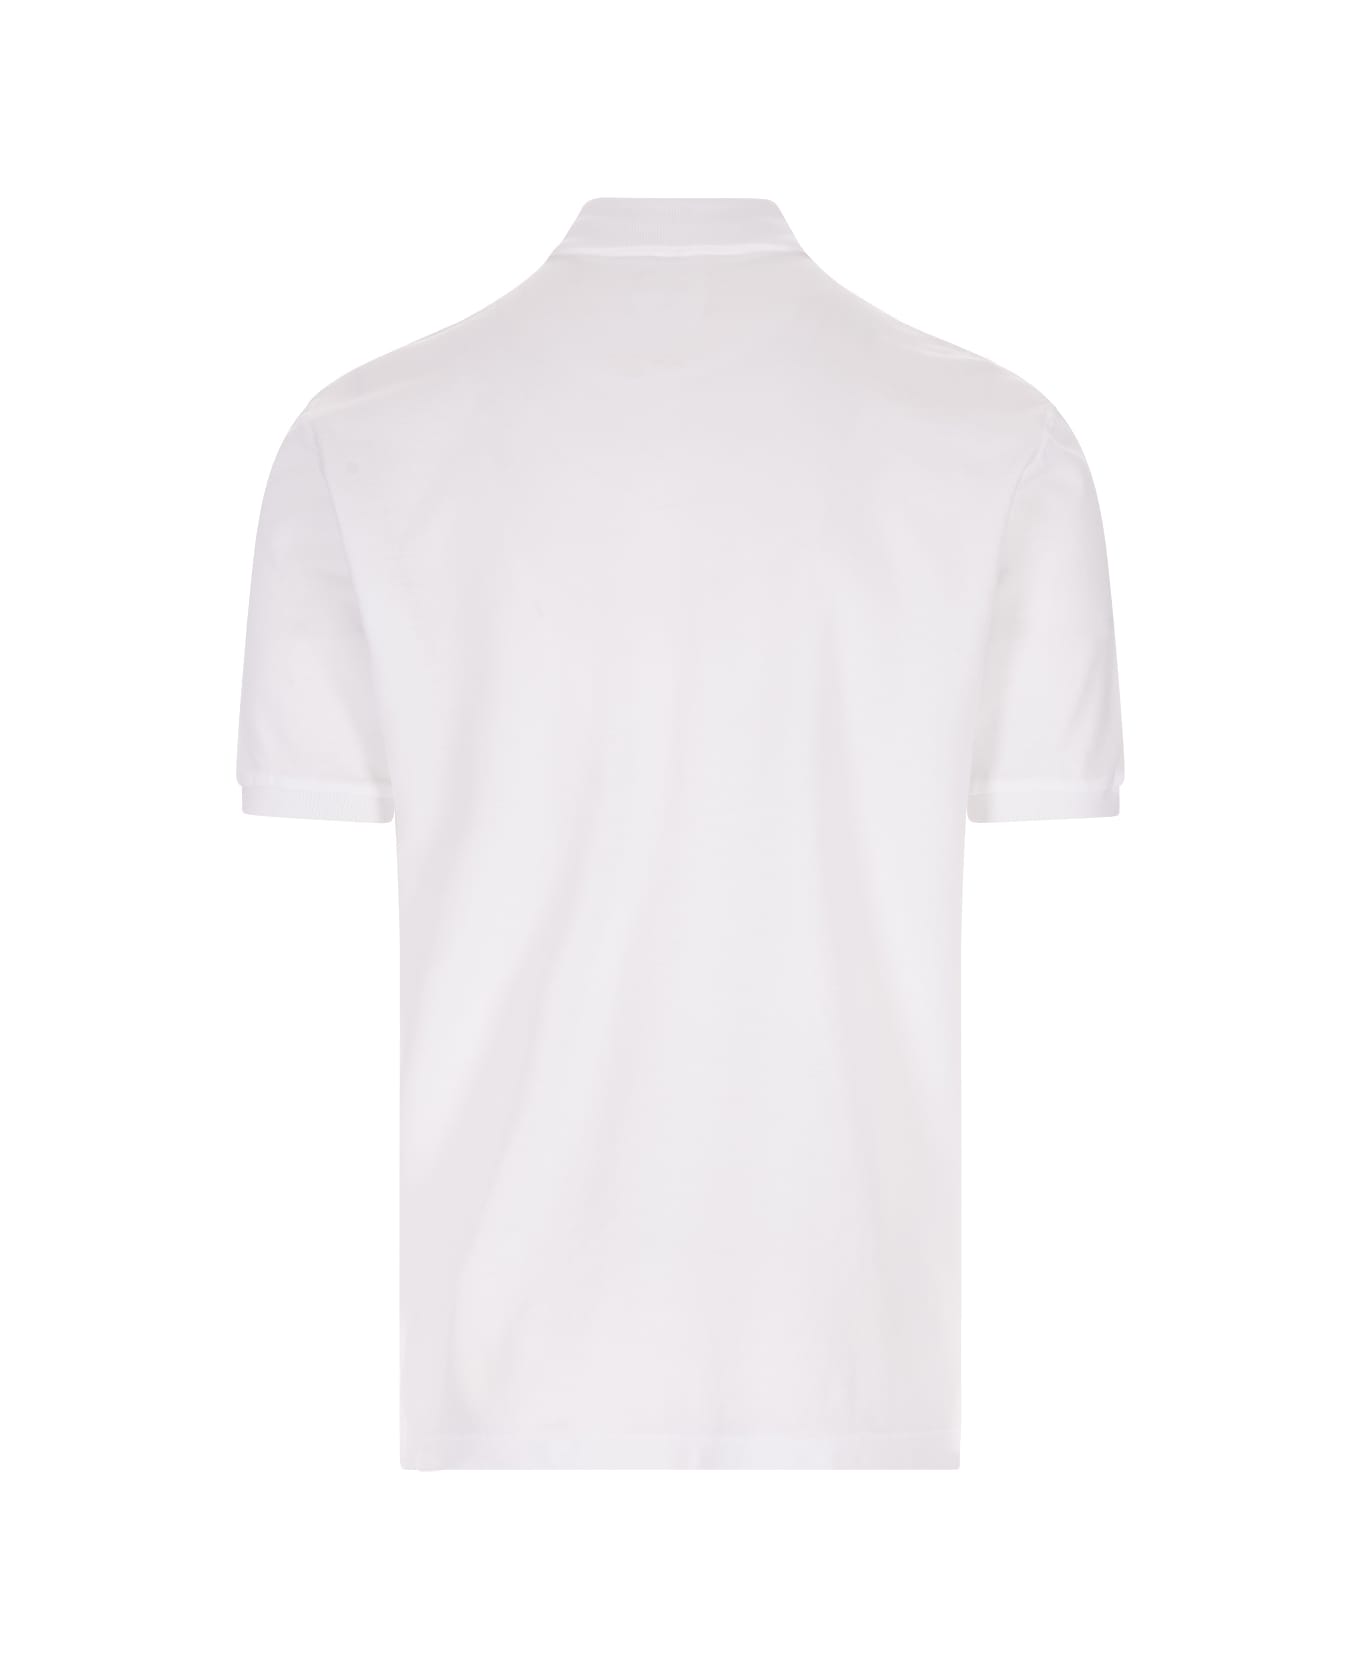 Fedeli White Cotton Pique Polo Shirt - White